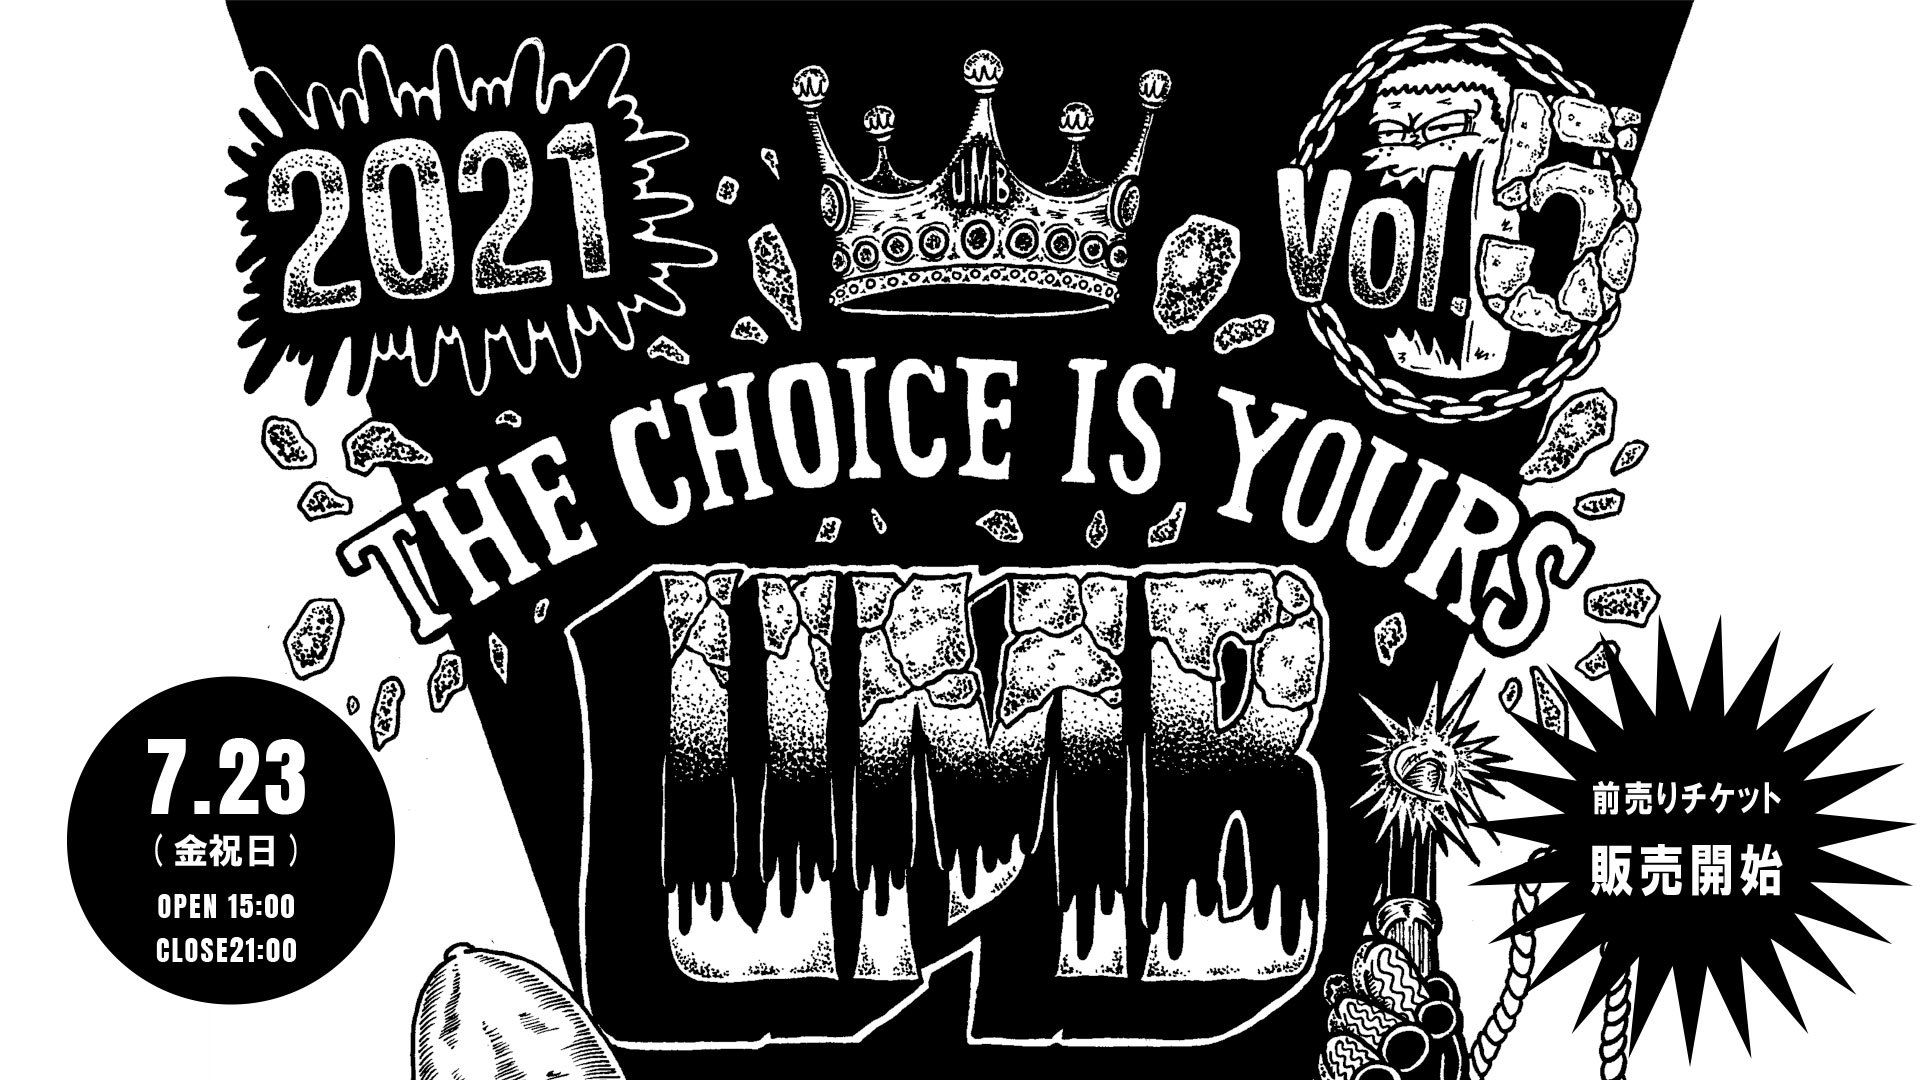 本・音楽・ゲームUMB2021 The choice of yours vol.5 (DVD) - ミュージック